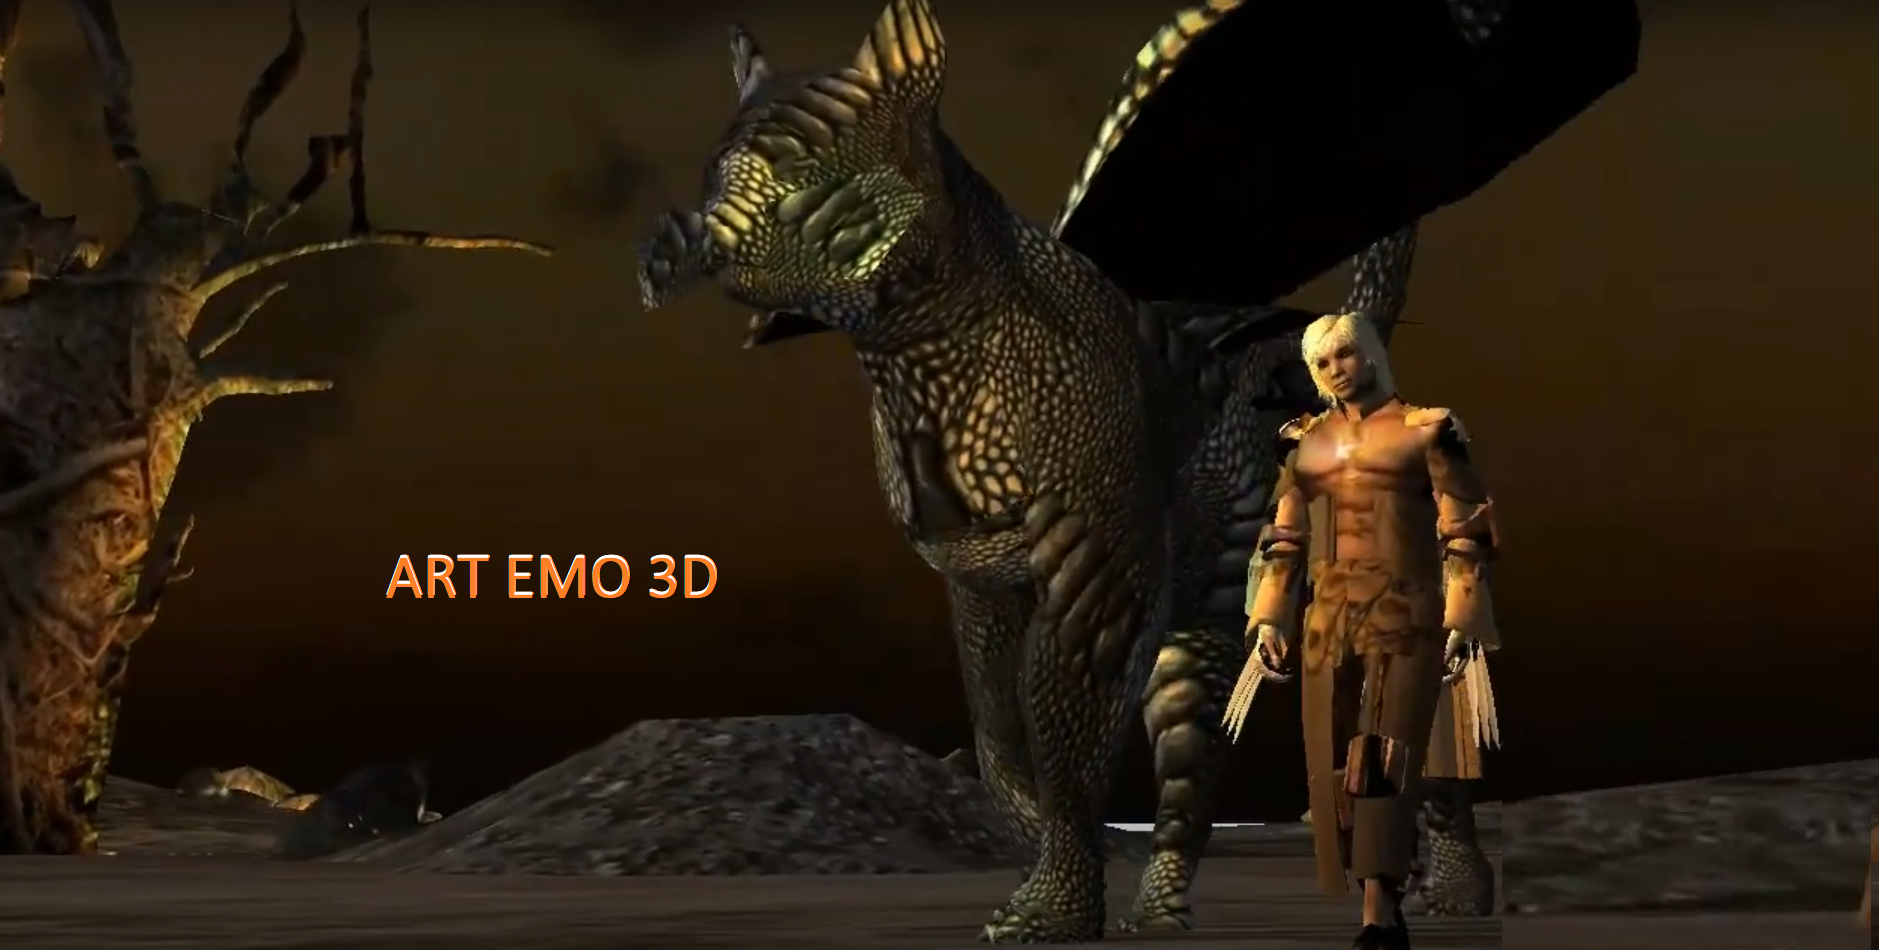 Récupérer mon mot de passe - 3D ART-EMO 9wm0